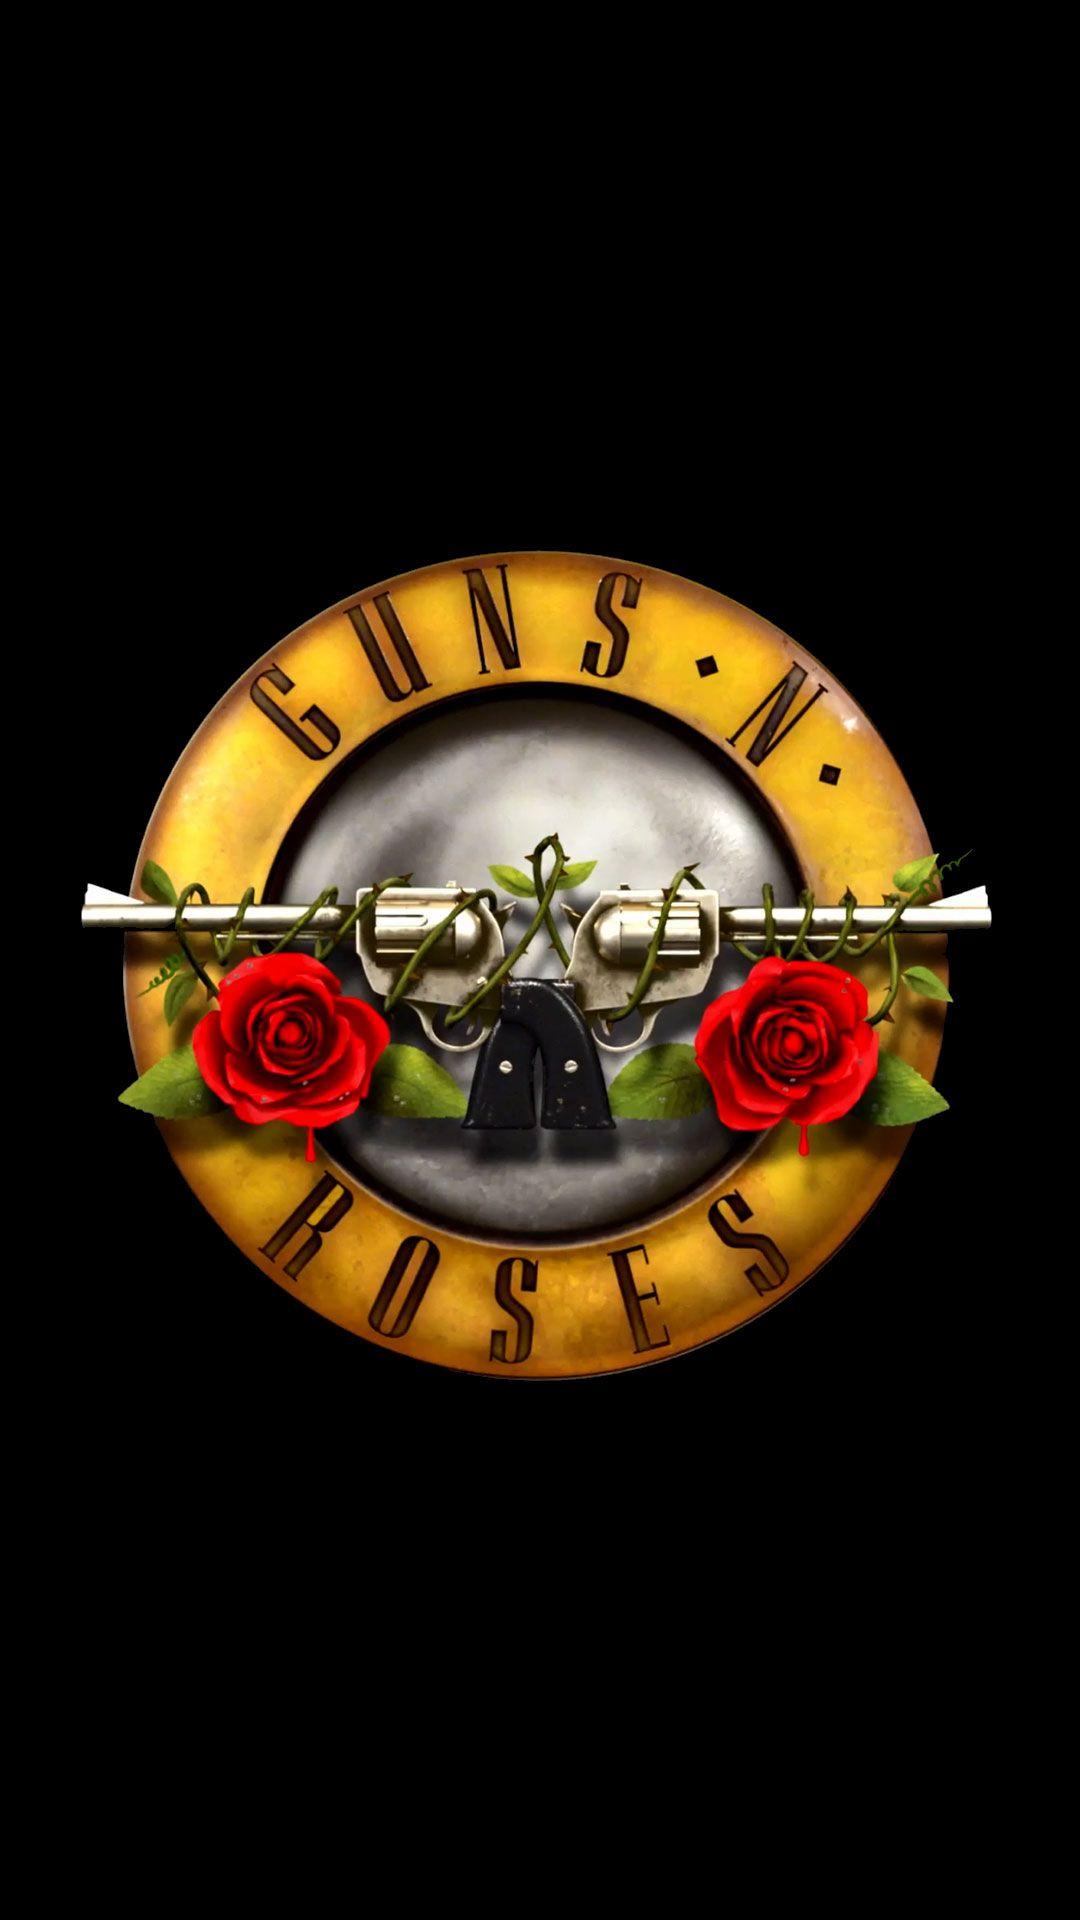 Guns N' Roses Logo - Guns N' Roses